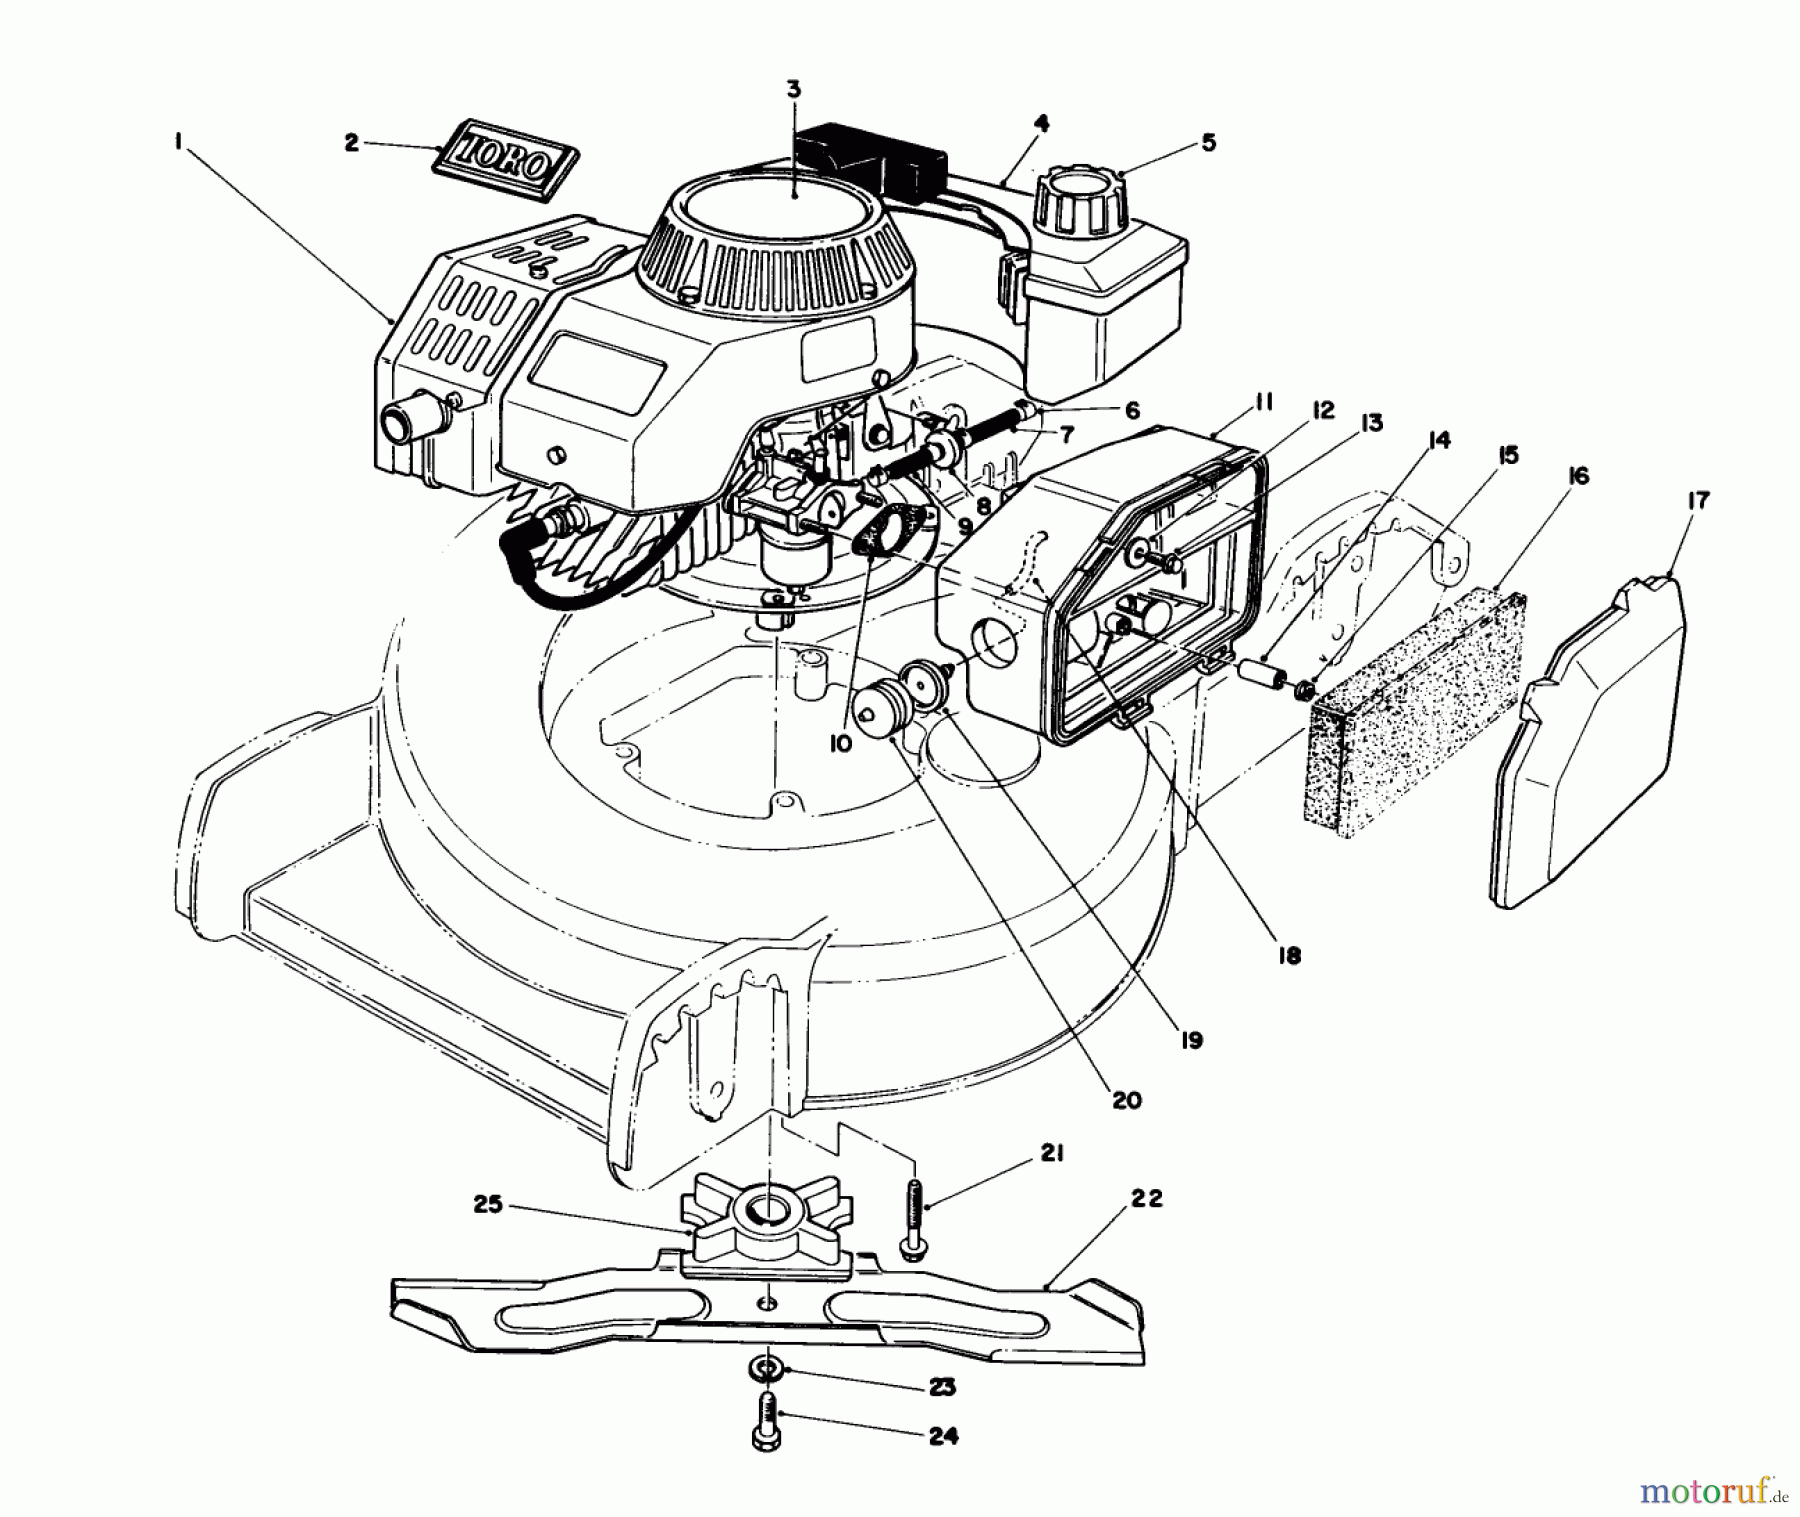  Toro Neu Mowers, Walk-Behind Seite 1 20746C - Toro Lawnmower, 1988 (8000001-8999999) ENGINE ASSEMBLY